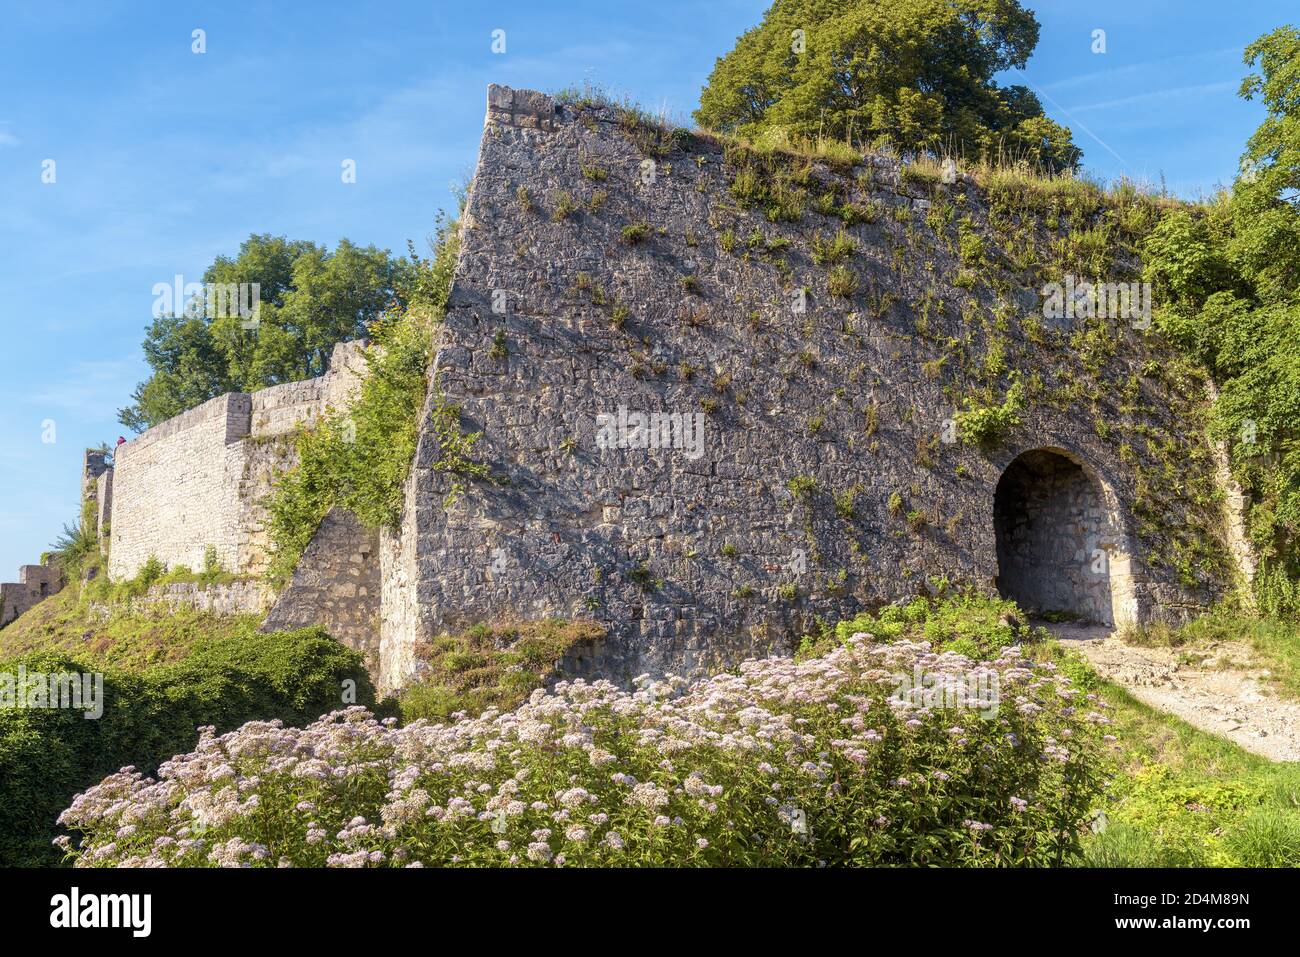 Château de Hohenurach près de la vieille ville de Bad Urach, Allemagne. Les ruines surcultivées de ce château médiéval sont un point de repère du Bade-Wurtemberg. Entrée des abandonnés Banque D'Images